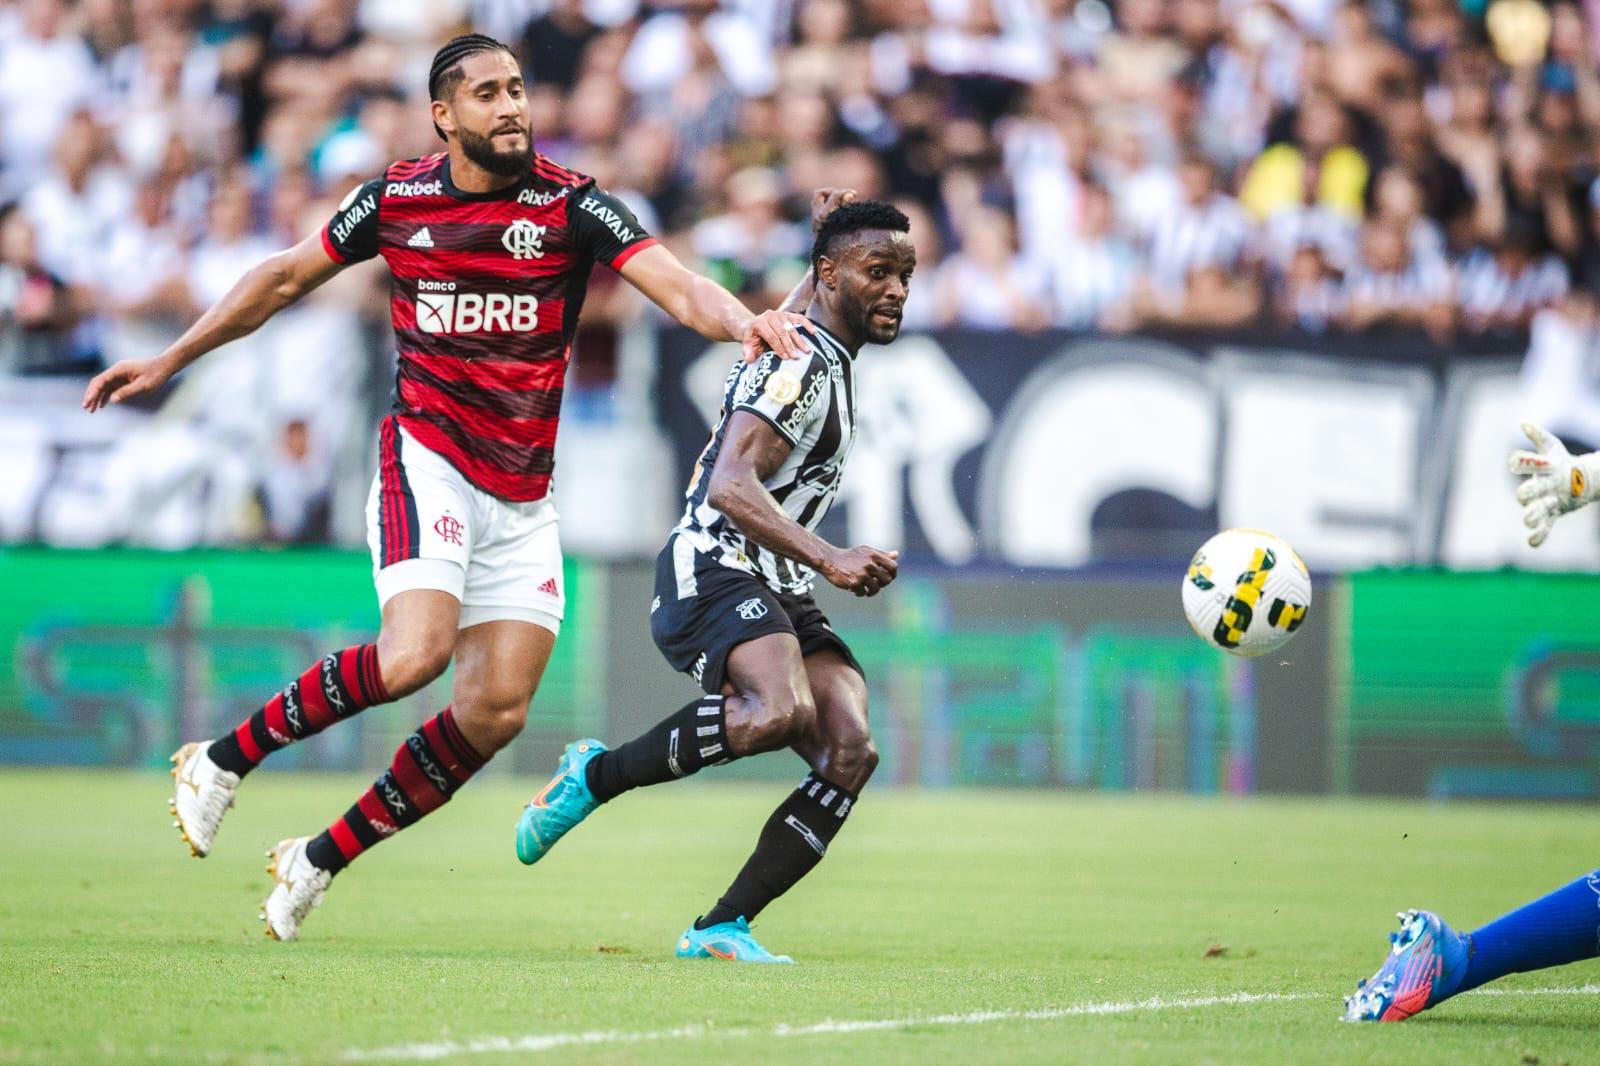 Flamengo x Ceará: Venda de ingressos presencial para torcida alvinegra será no dia do jogo